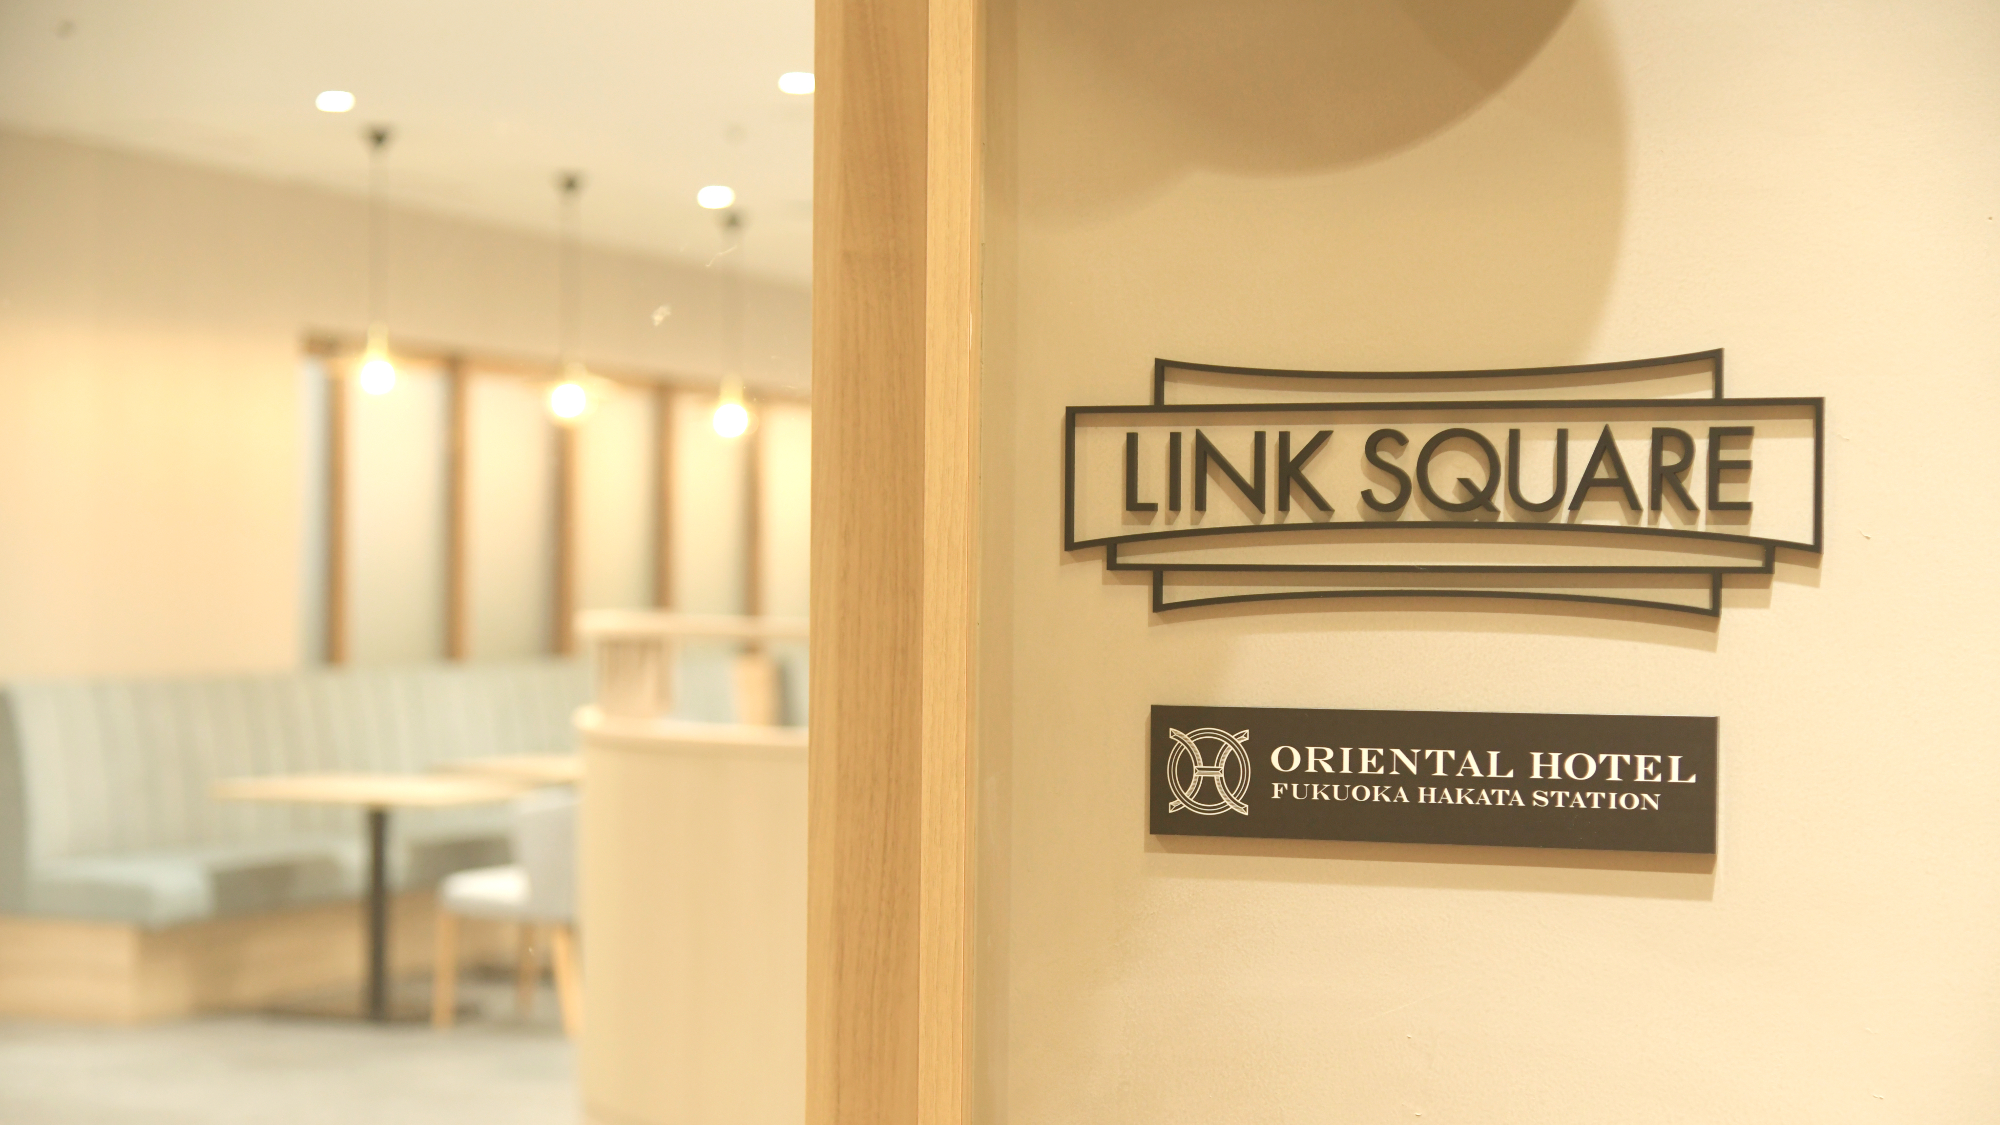 ◇ホテル地下2階に位置する「LINK SQUARE」入口